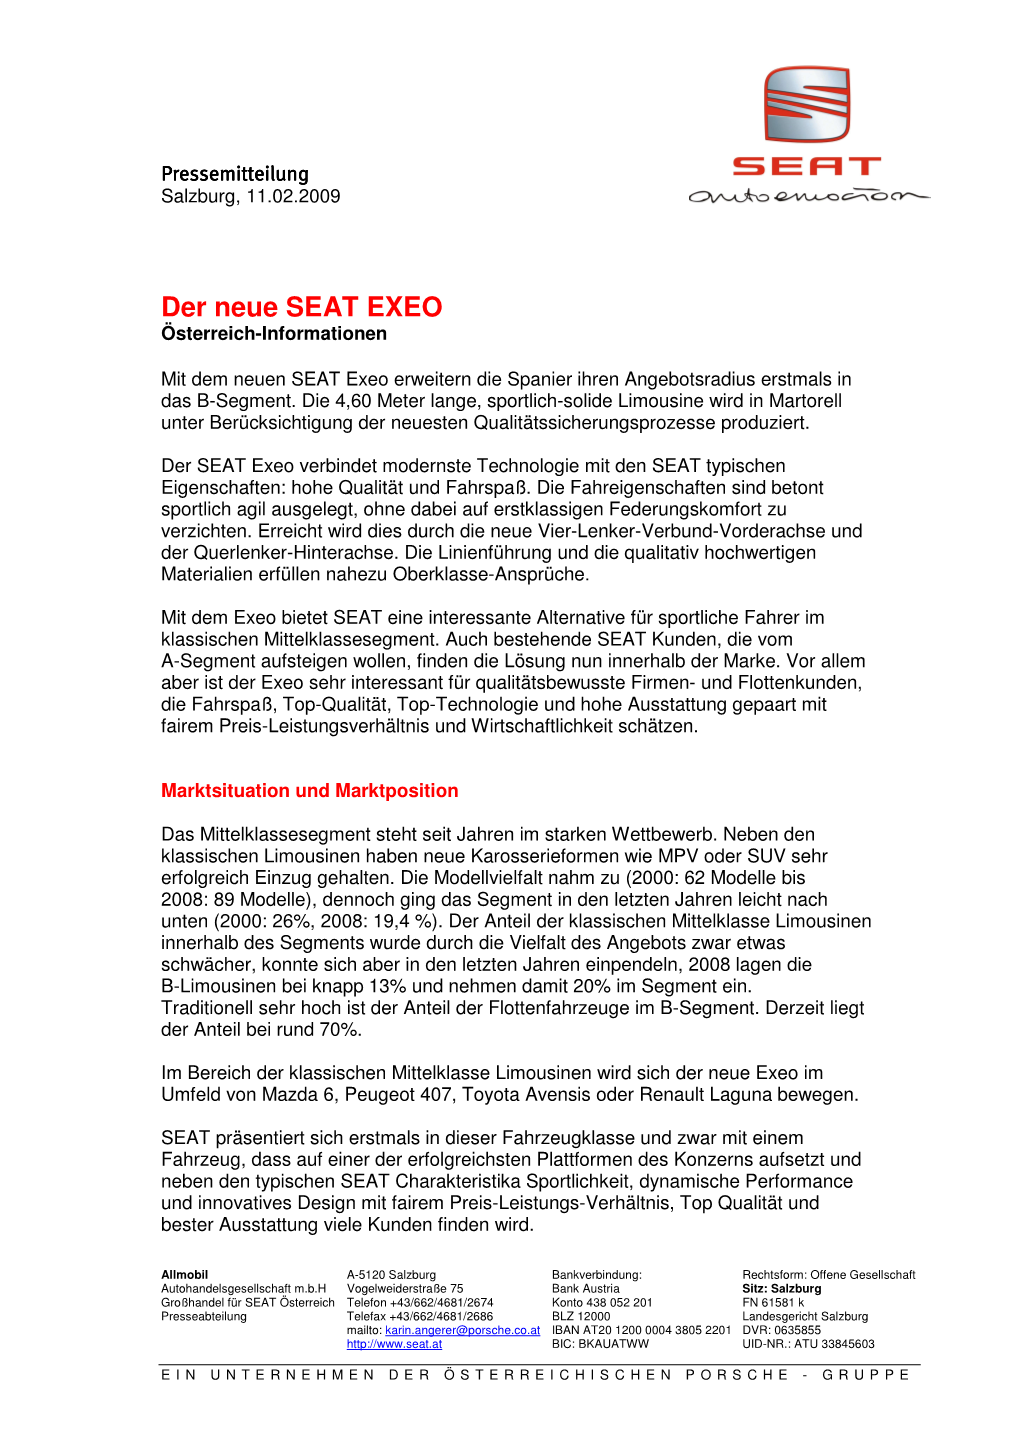 Der Neue SEAT EXEO Österreich-Informationen